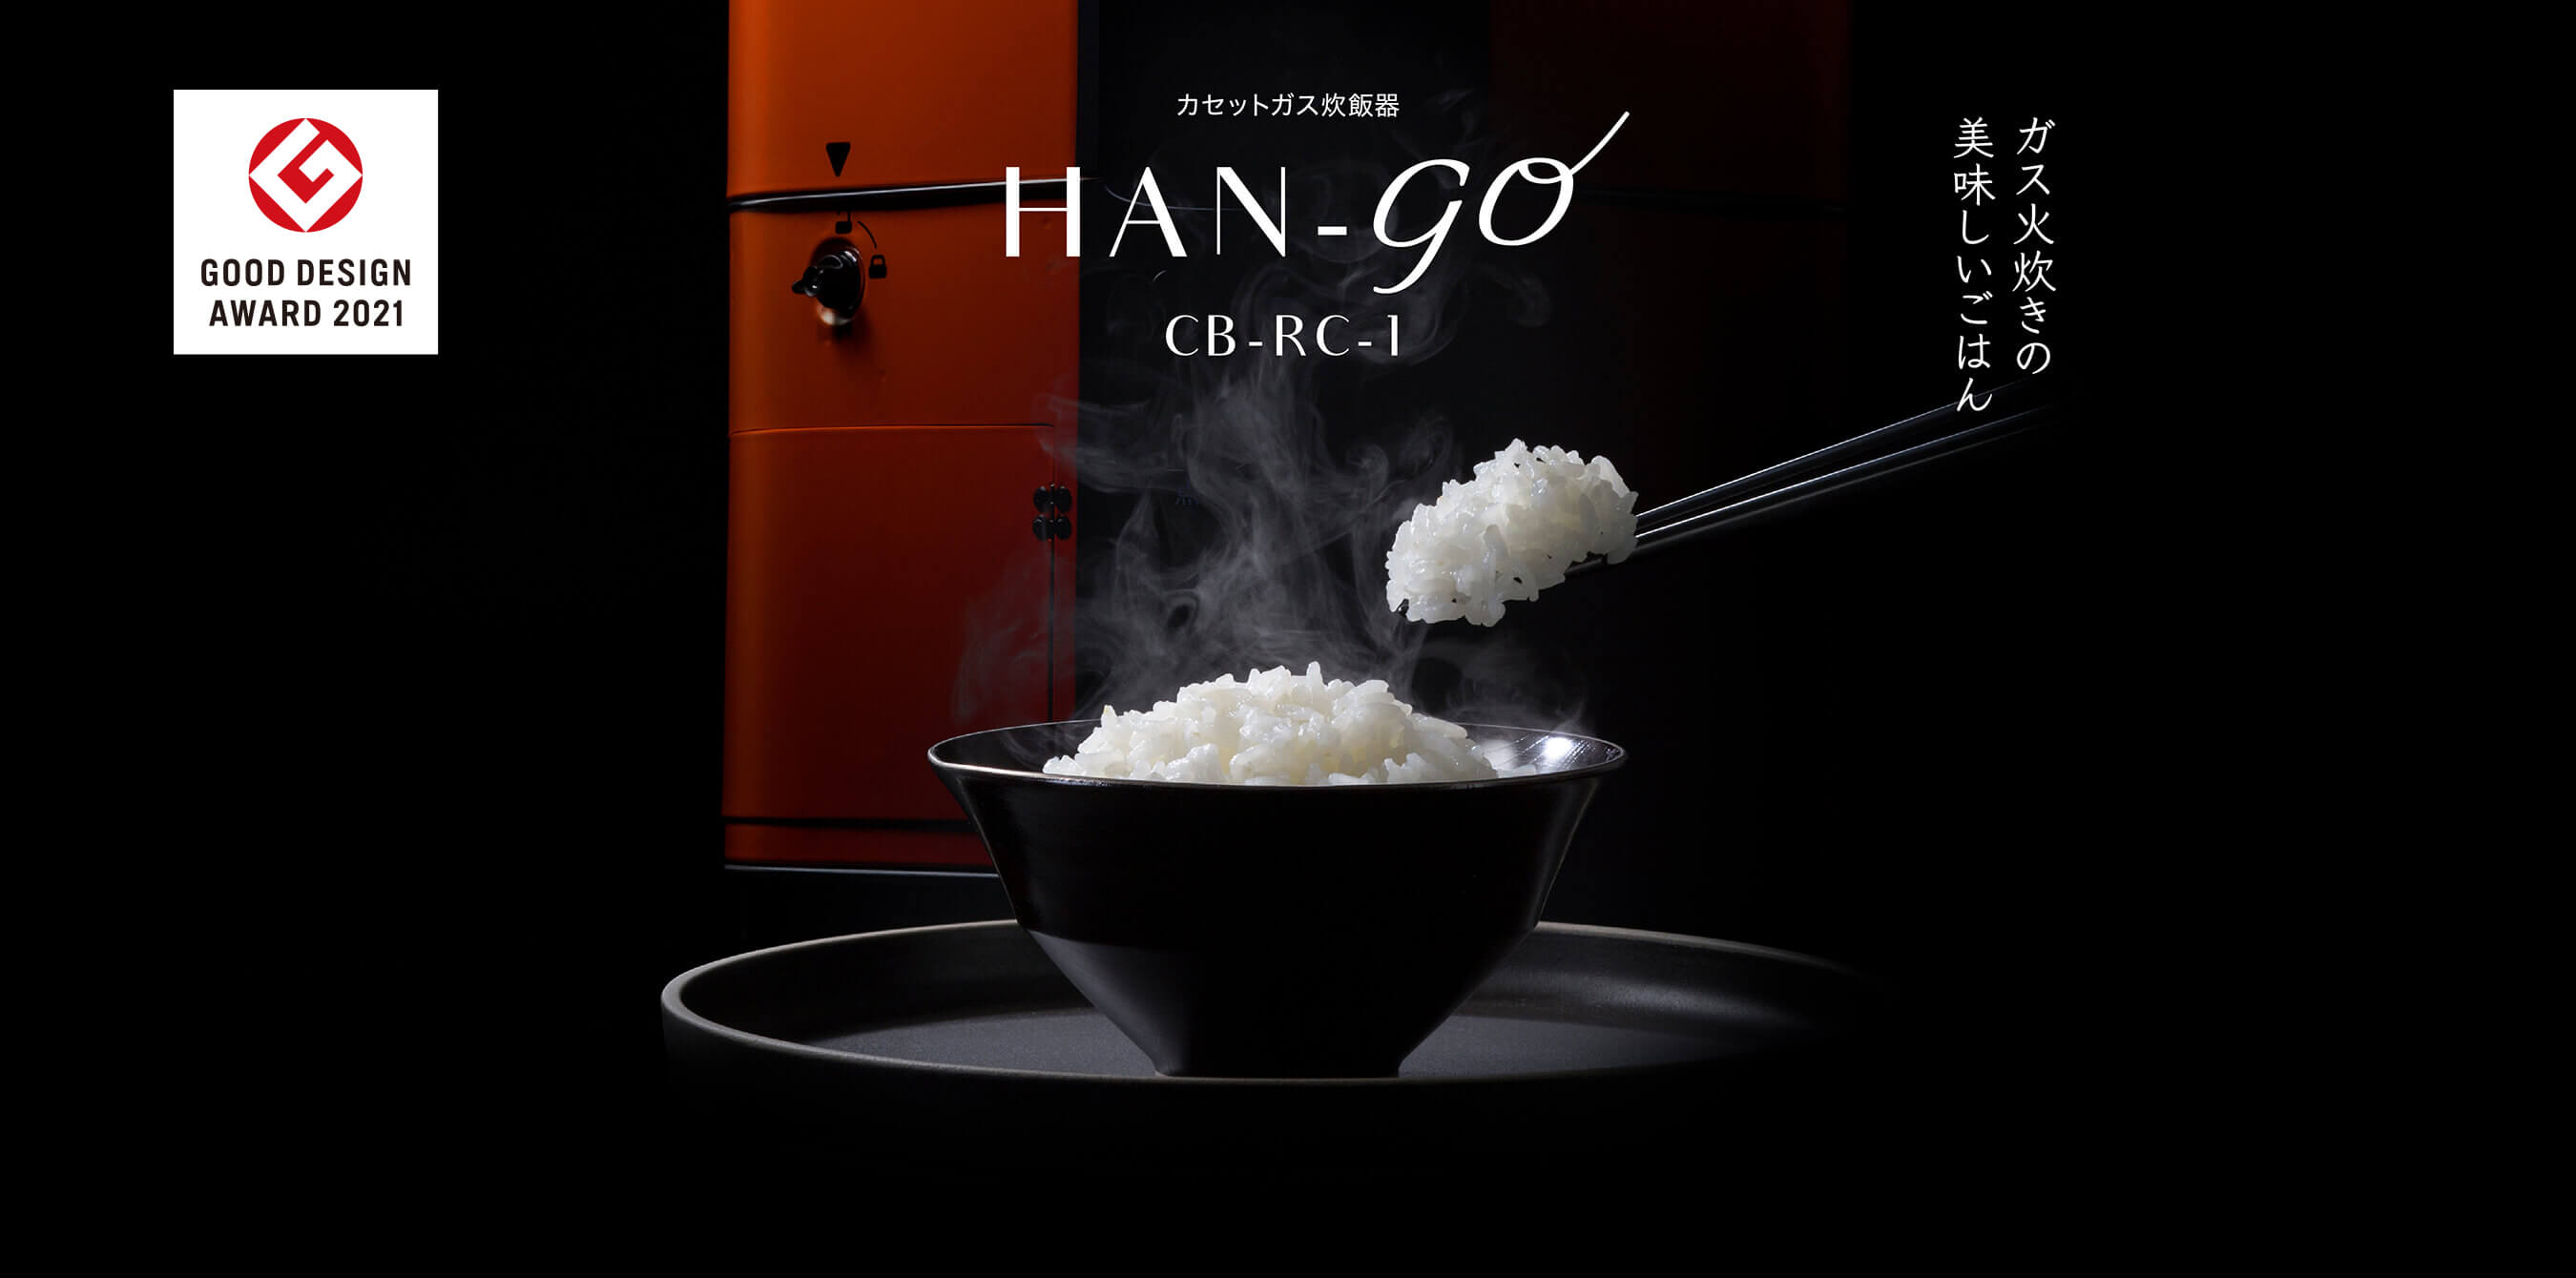 カセットガス炊飯器 HAN-go | 岩谷産業株式会社